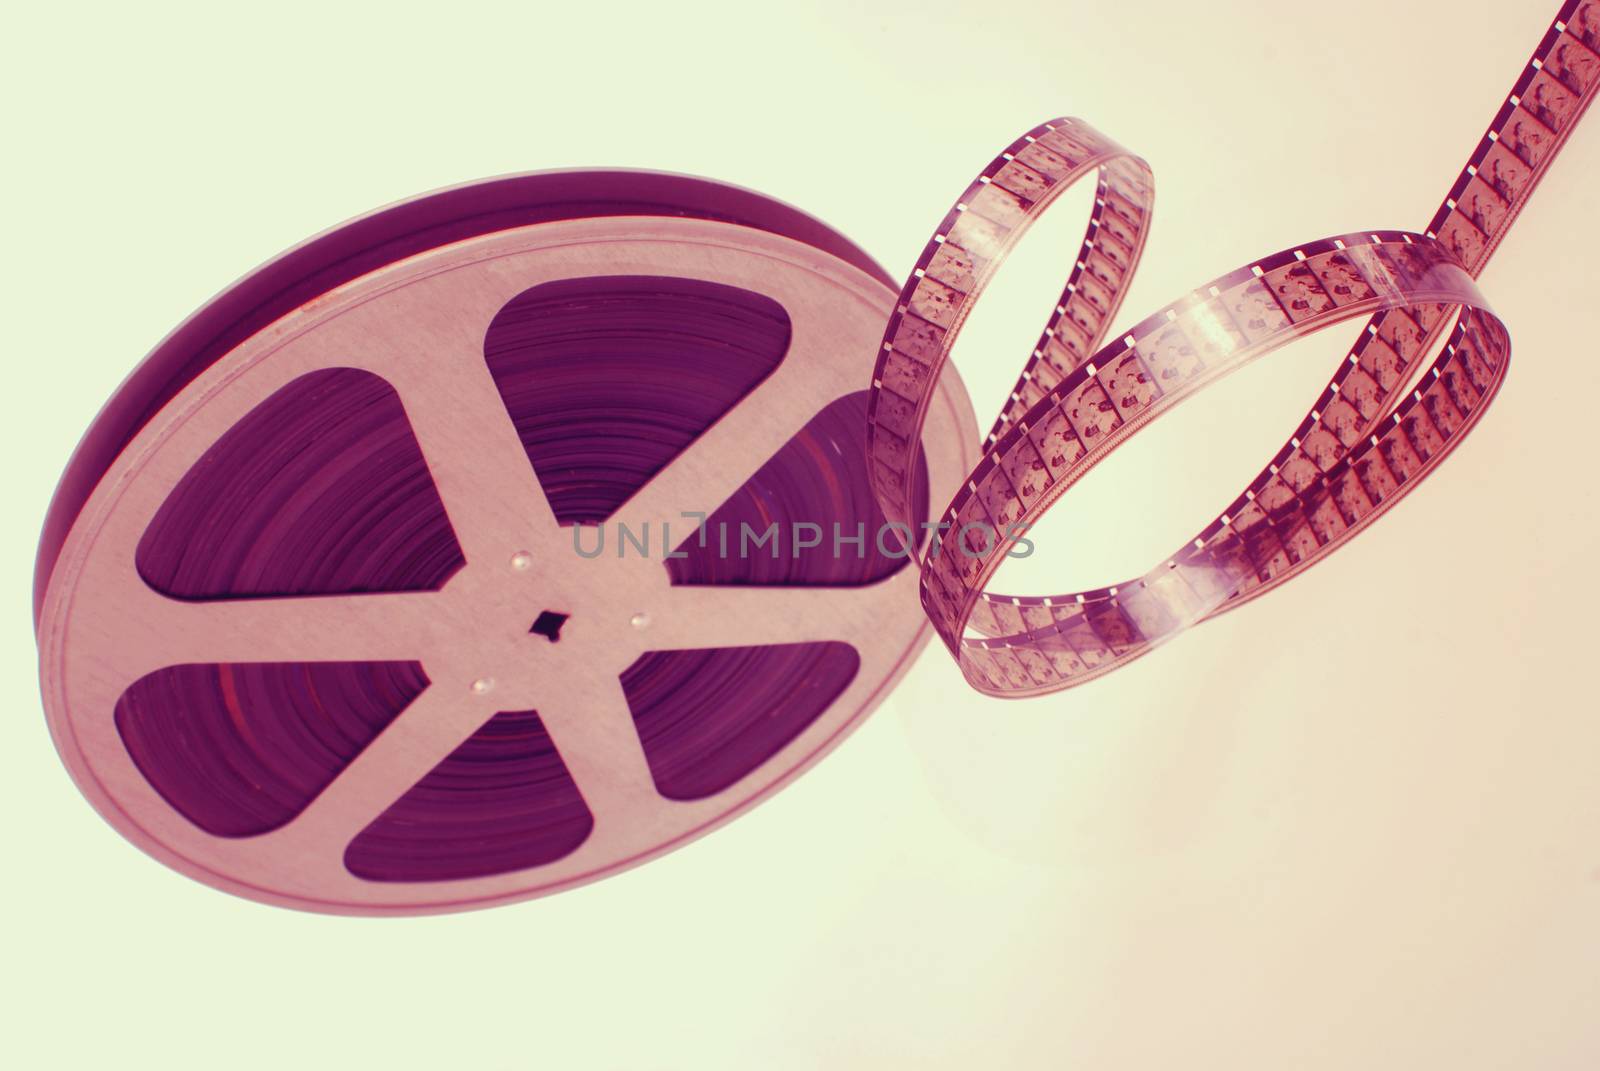 Vintage analogic photographic film strip wheel isolated on white background.